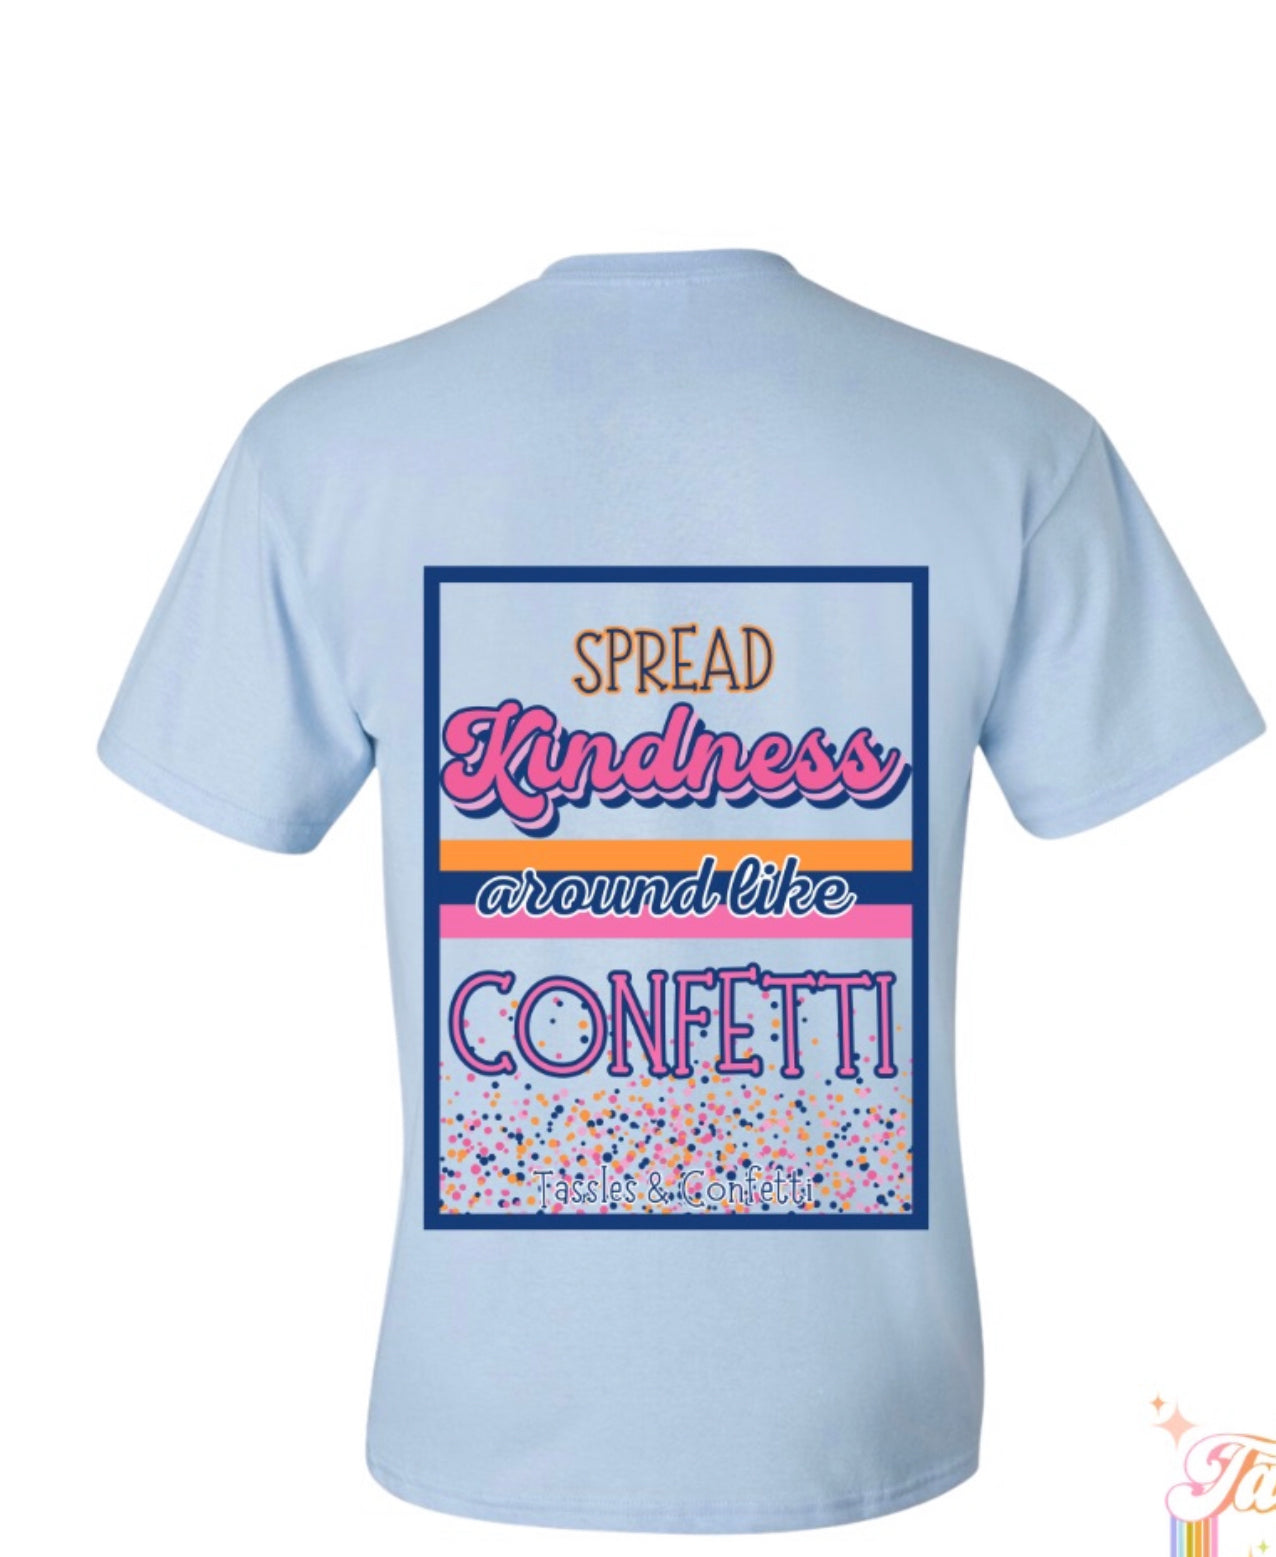 Spread kindness Around Like Confetti (Cotton candy) - Tassels & Confetti 